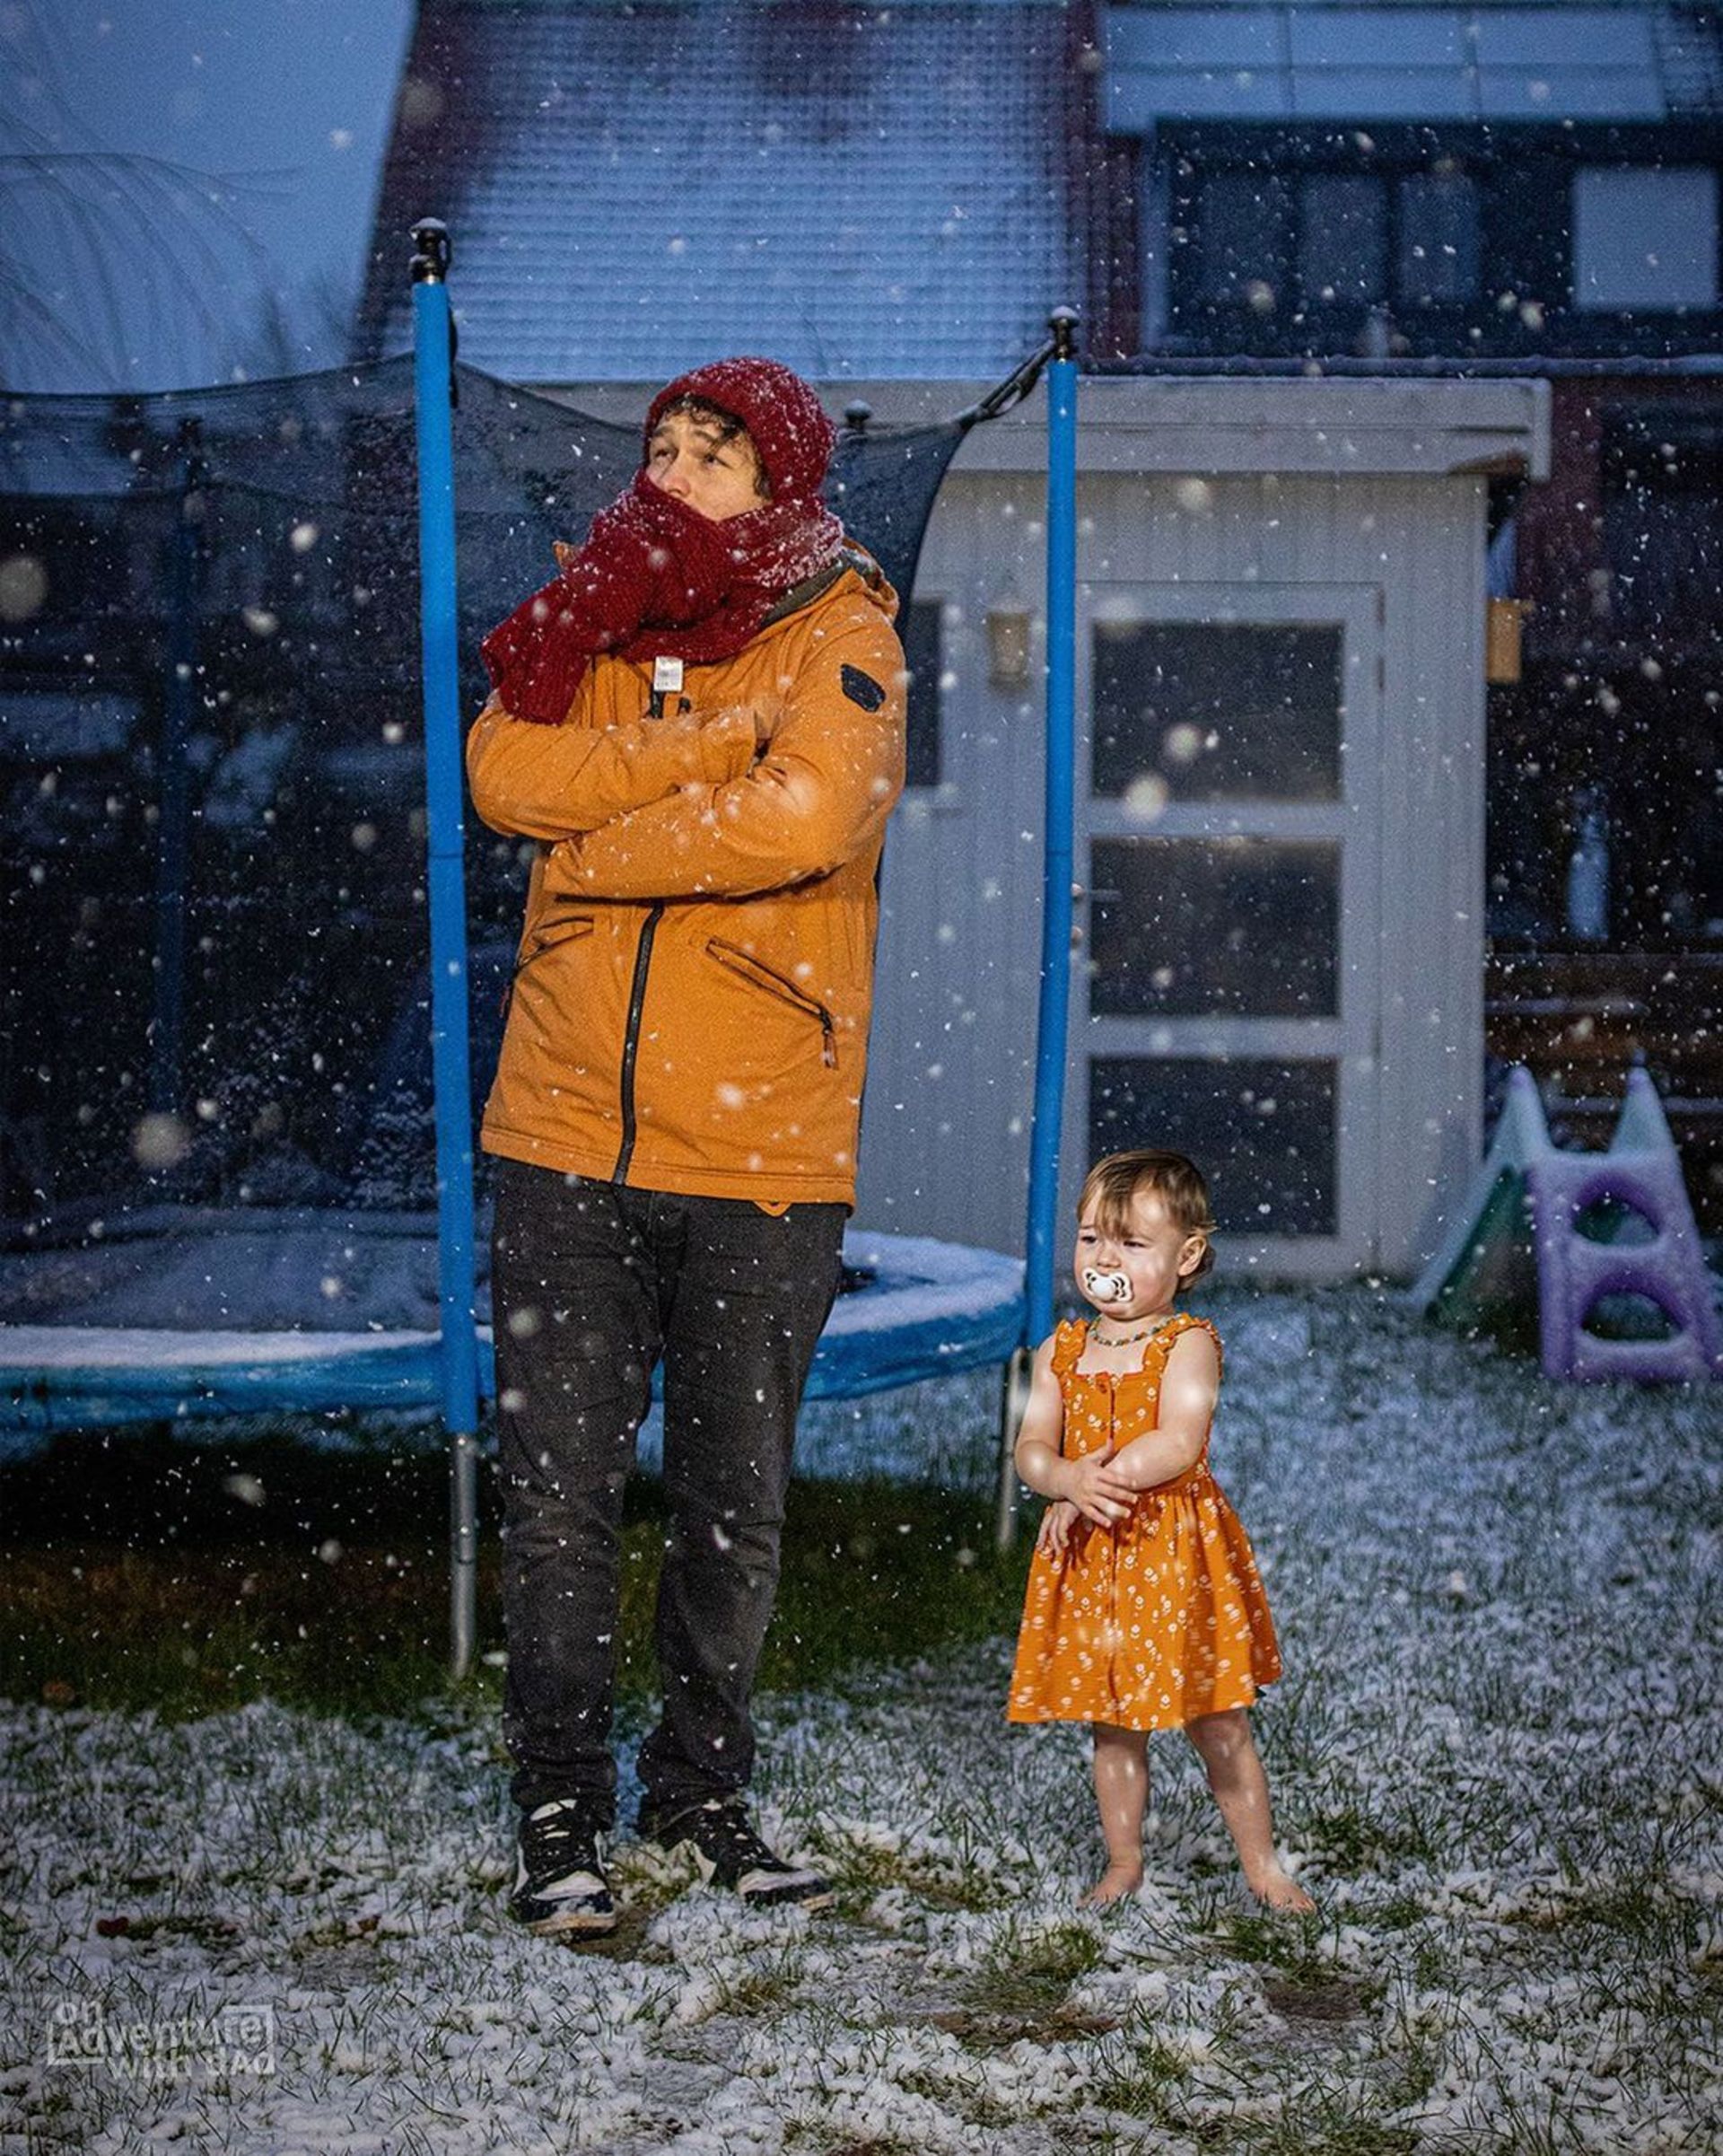 پدر و دختر در سرما و برف